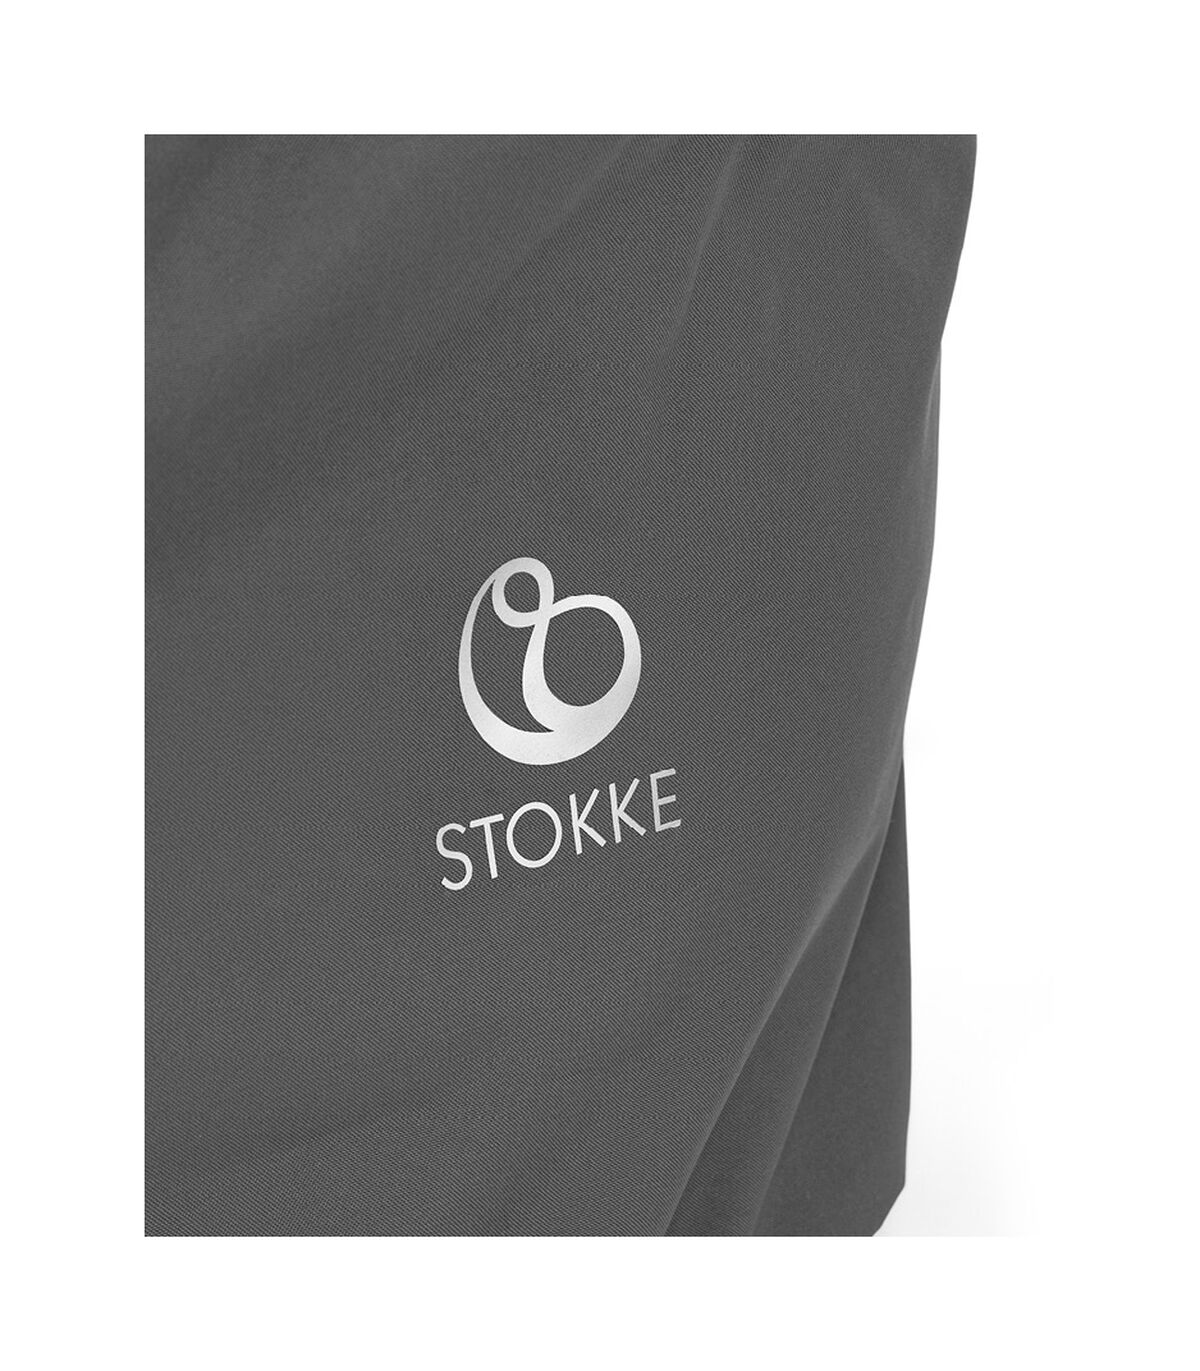 Stokke® Clikk™ 旅行袋